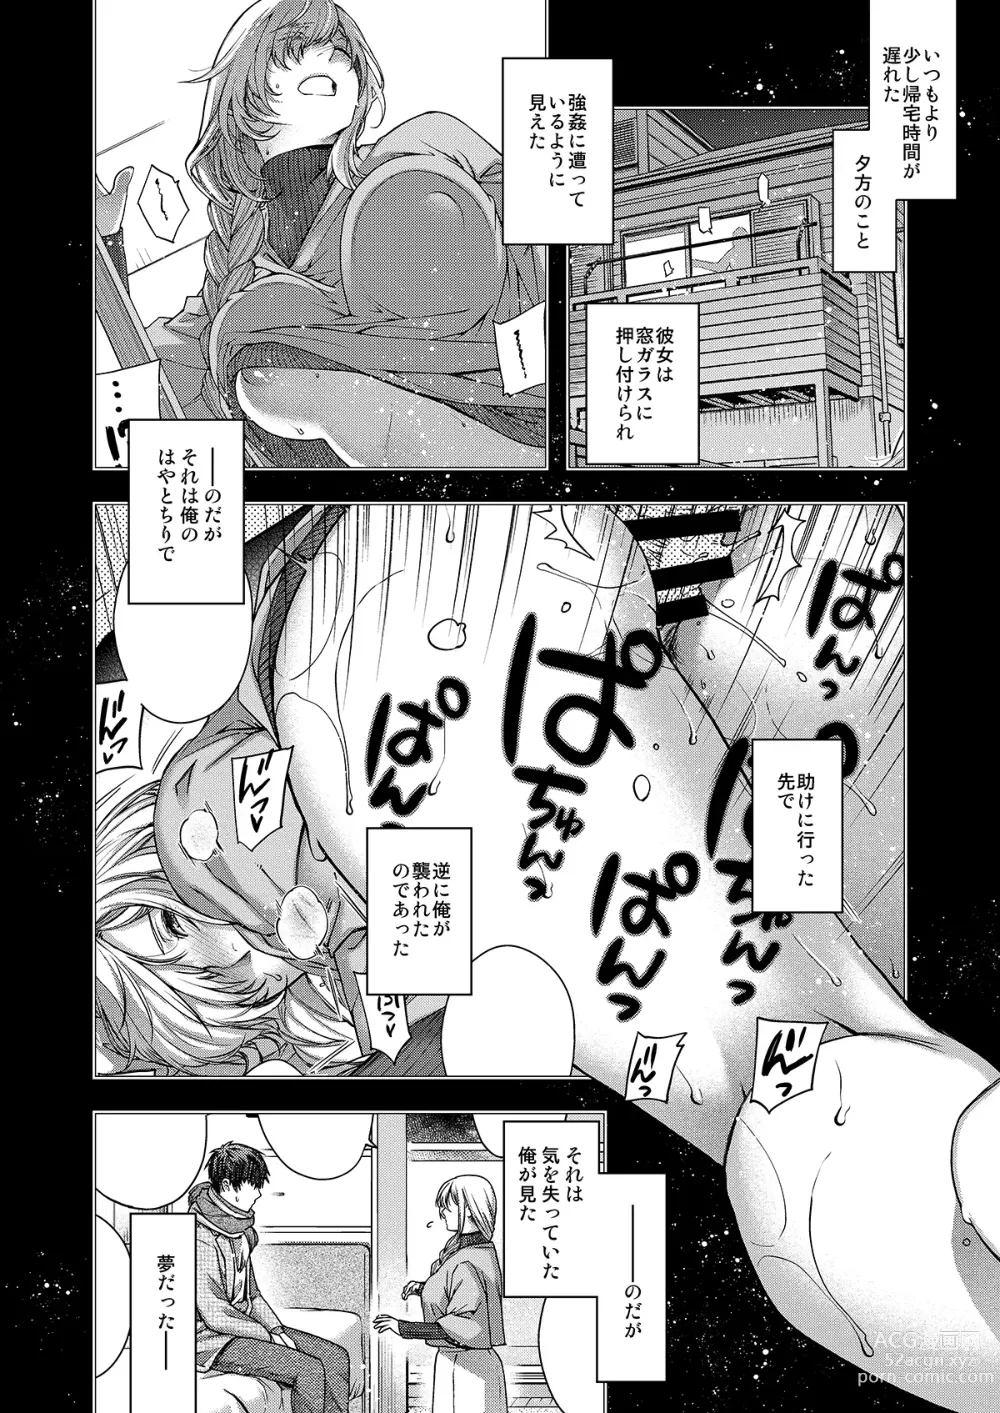 Page 3 of doujinshi Aikagi no Kemono 2